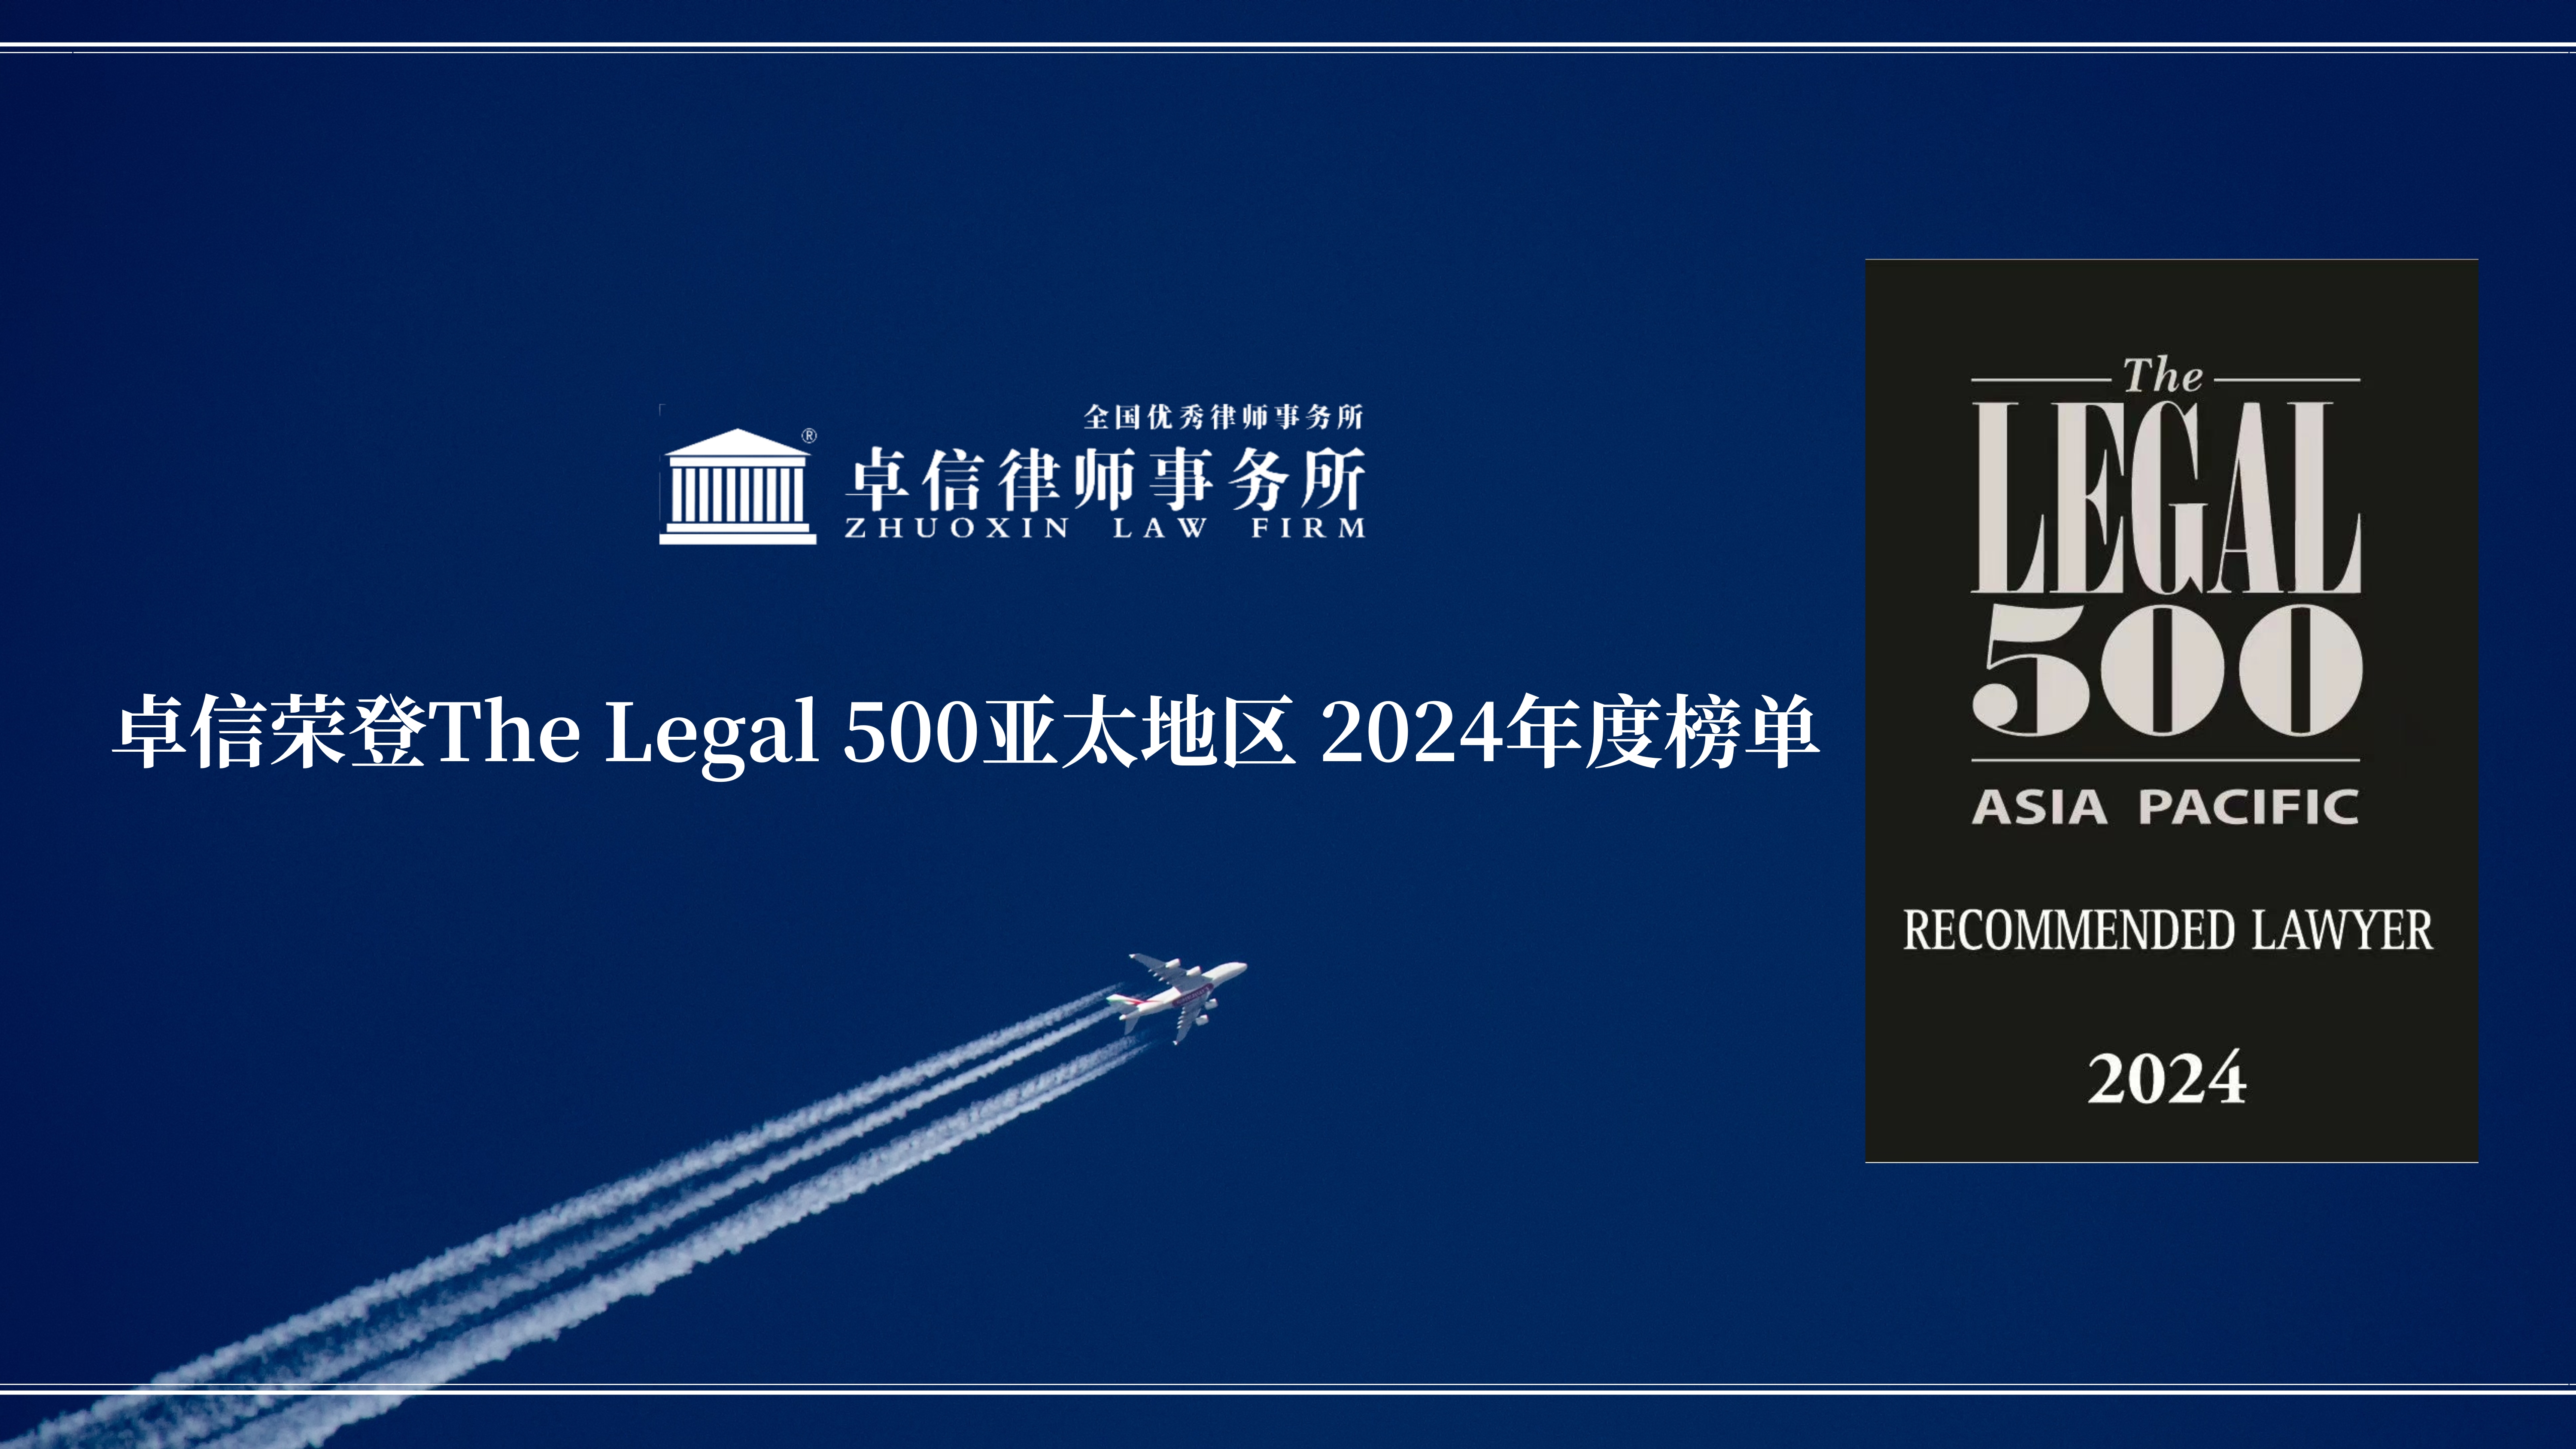 卓信荣誉丨卓信荣登The Legal 500亚太地区2024年度榜单